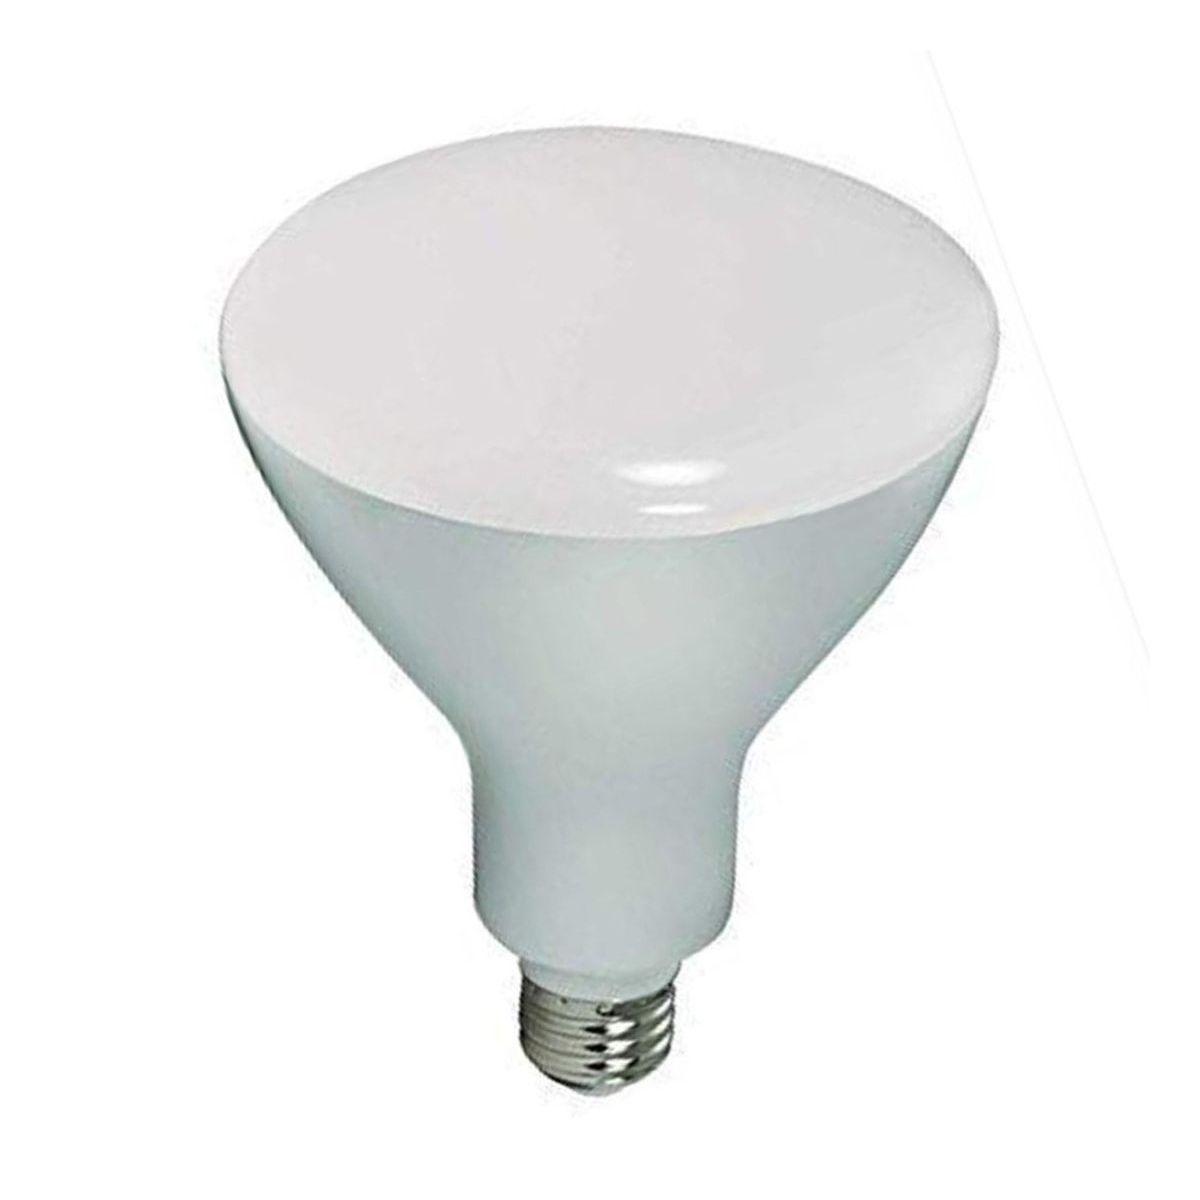 LED R40/BR40 Reflector bulb, 17 watt, 1075 Lumens, 2700K, E26 Medium Base, 105 Deg. Flood, Dimmable - Bees Lighting